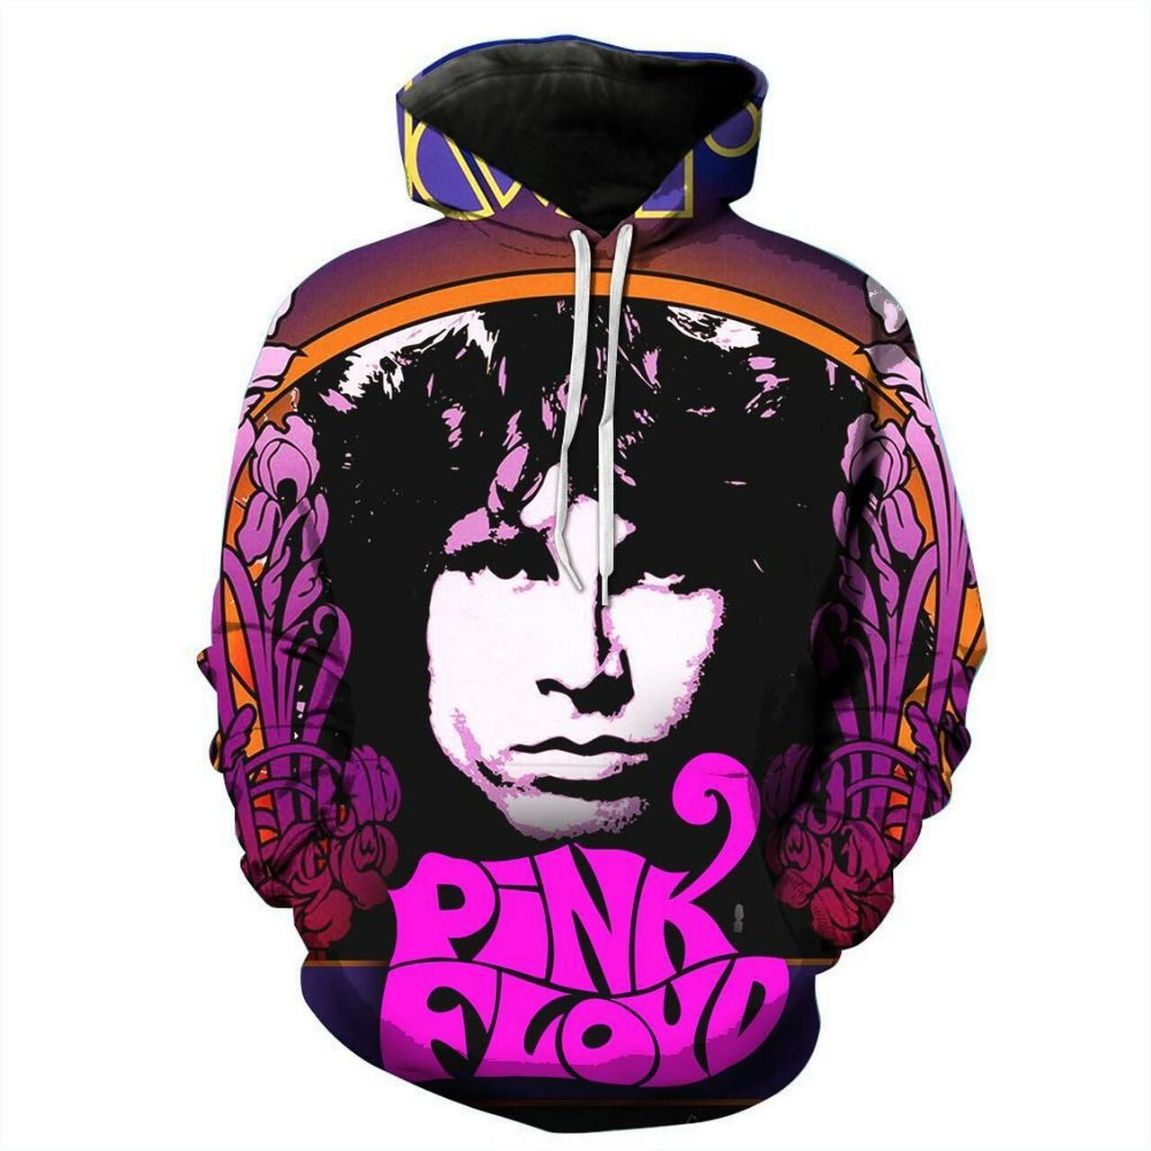 Pink Floyd Rock Band Music Xvii 3d Zip Hoodie